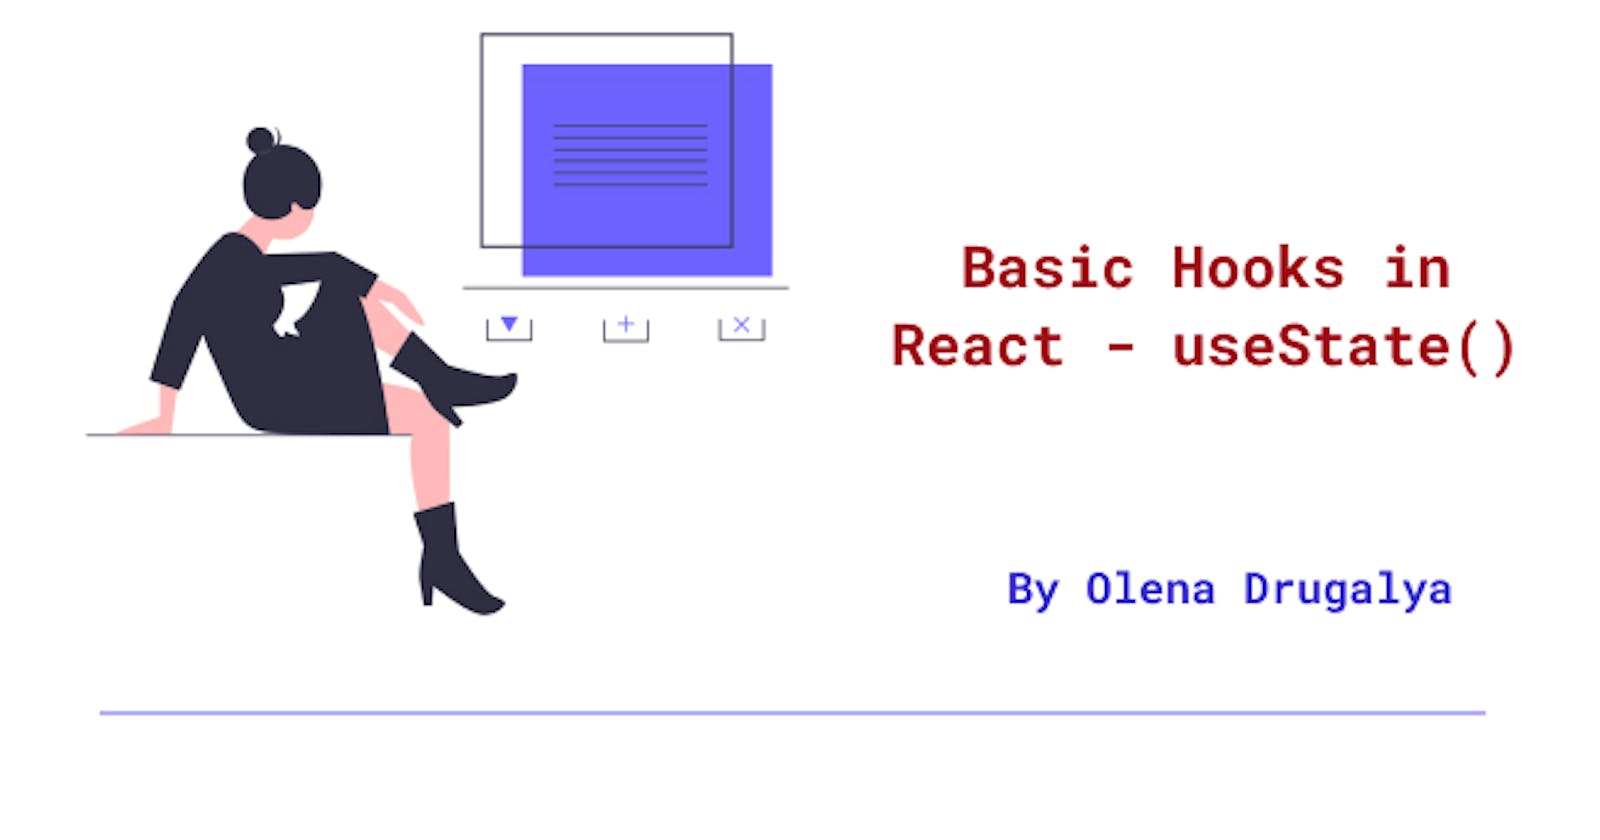 Basic Hooks in React - useState()